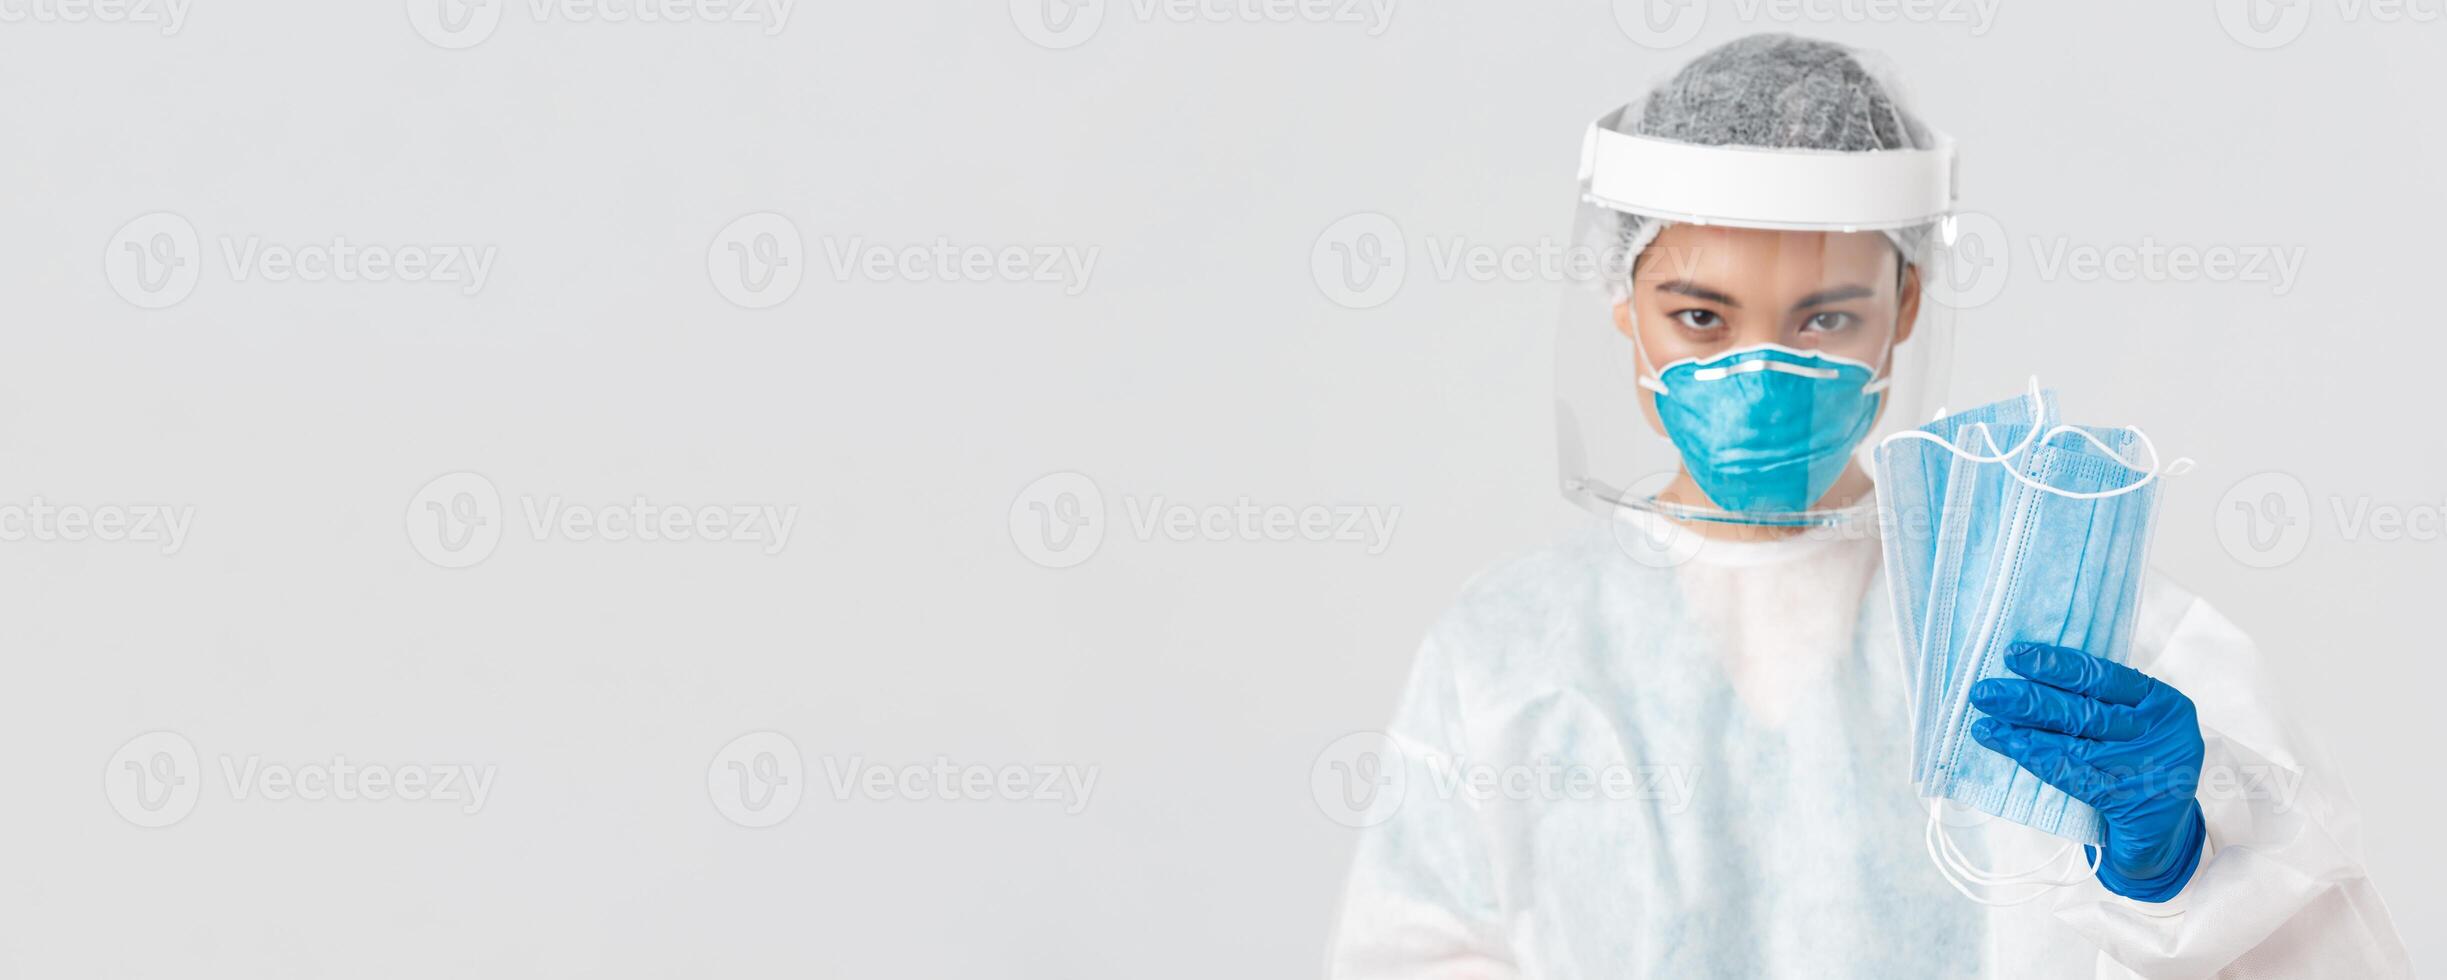 covid19, coronavirus ziekte, gezondheidszorg arbeiders concept. zelfverzekerd serieus kijkend vrouw Aziatisch dokter in persoonlijk beschermend uitrusting aandringen geduldig vervelend medisch maskers, wit achtergrond foto